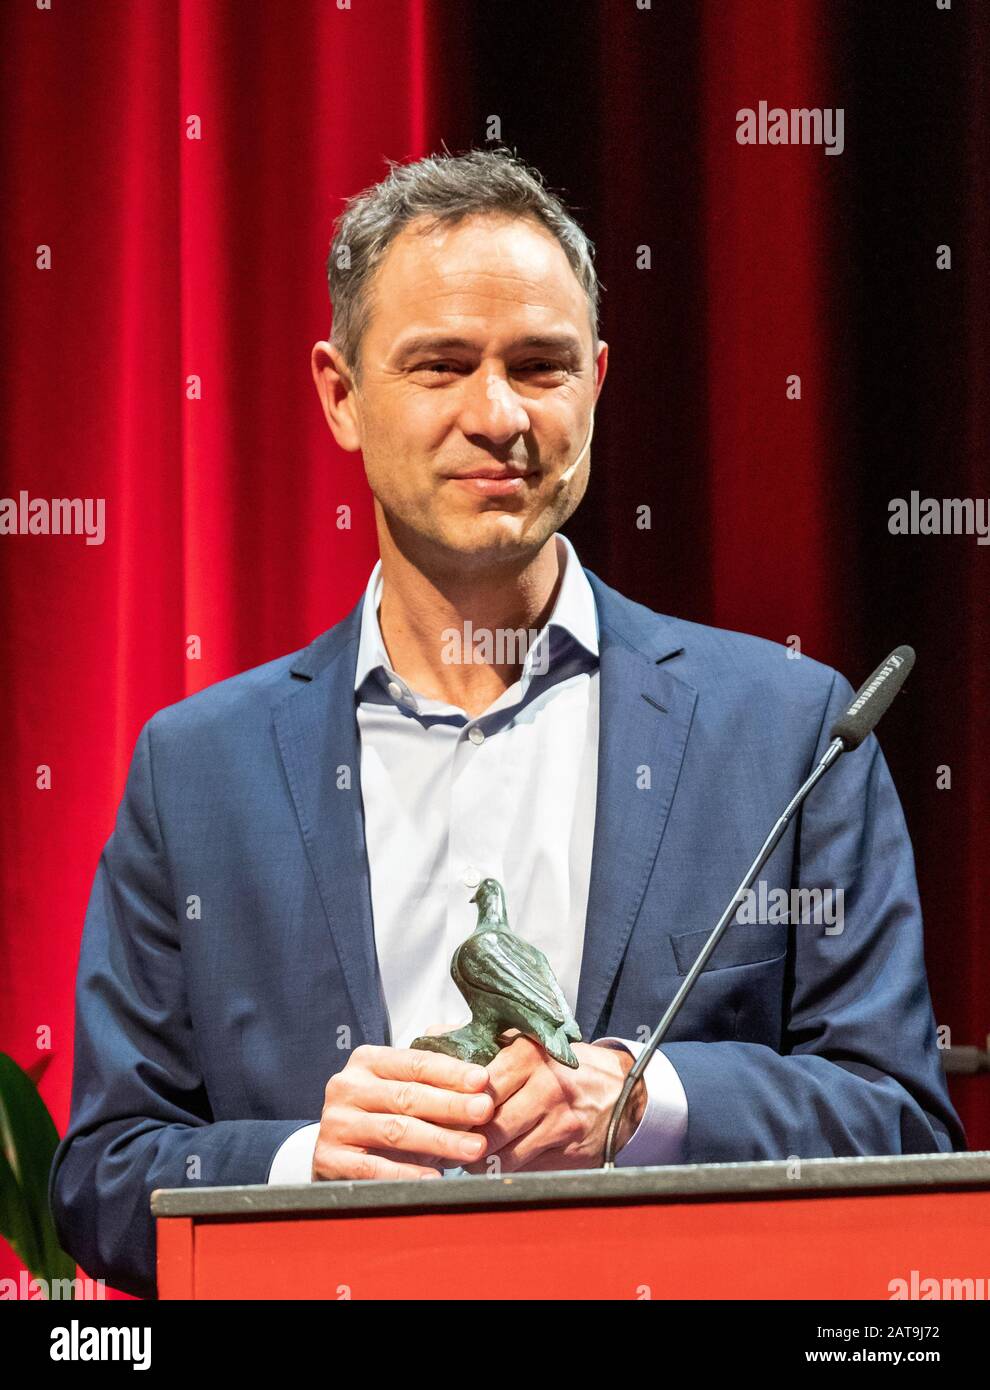 Daniele Ganser bei der Verleihung des Bautzener Friedenspreises im Theater in Bautzen  am 29.01.2020 Stock Photo